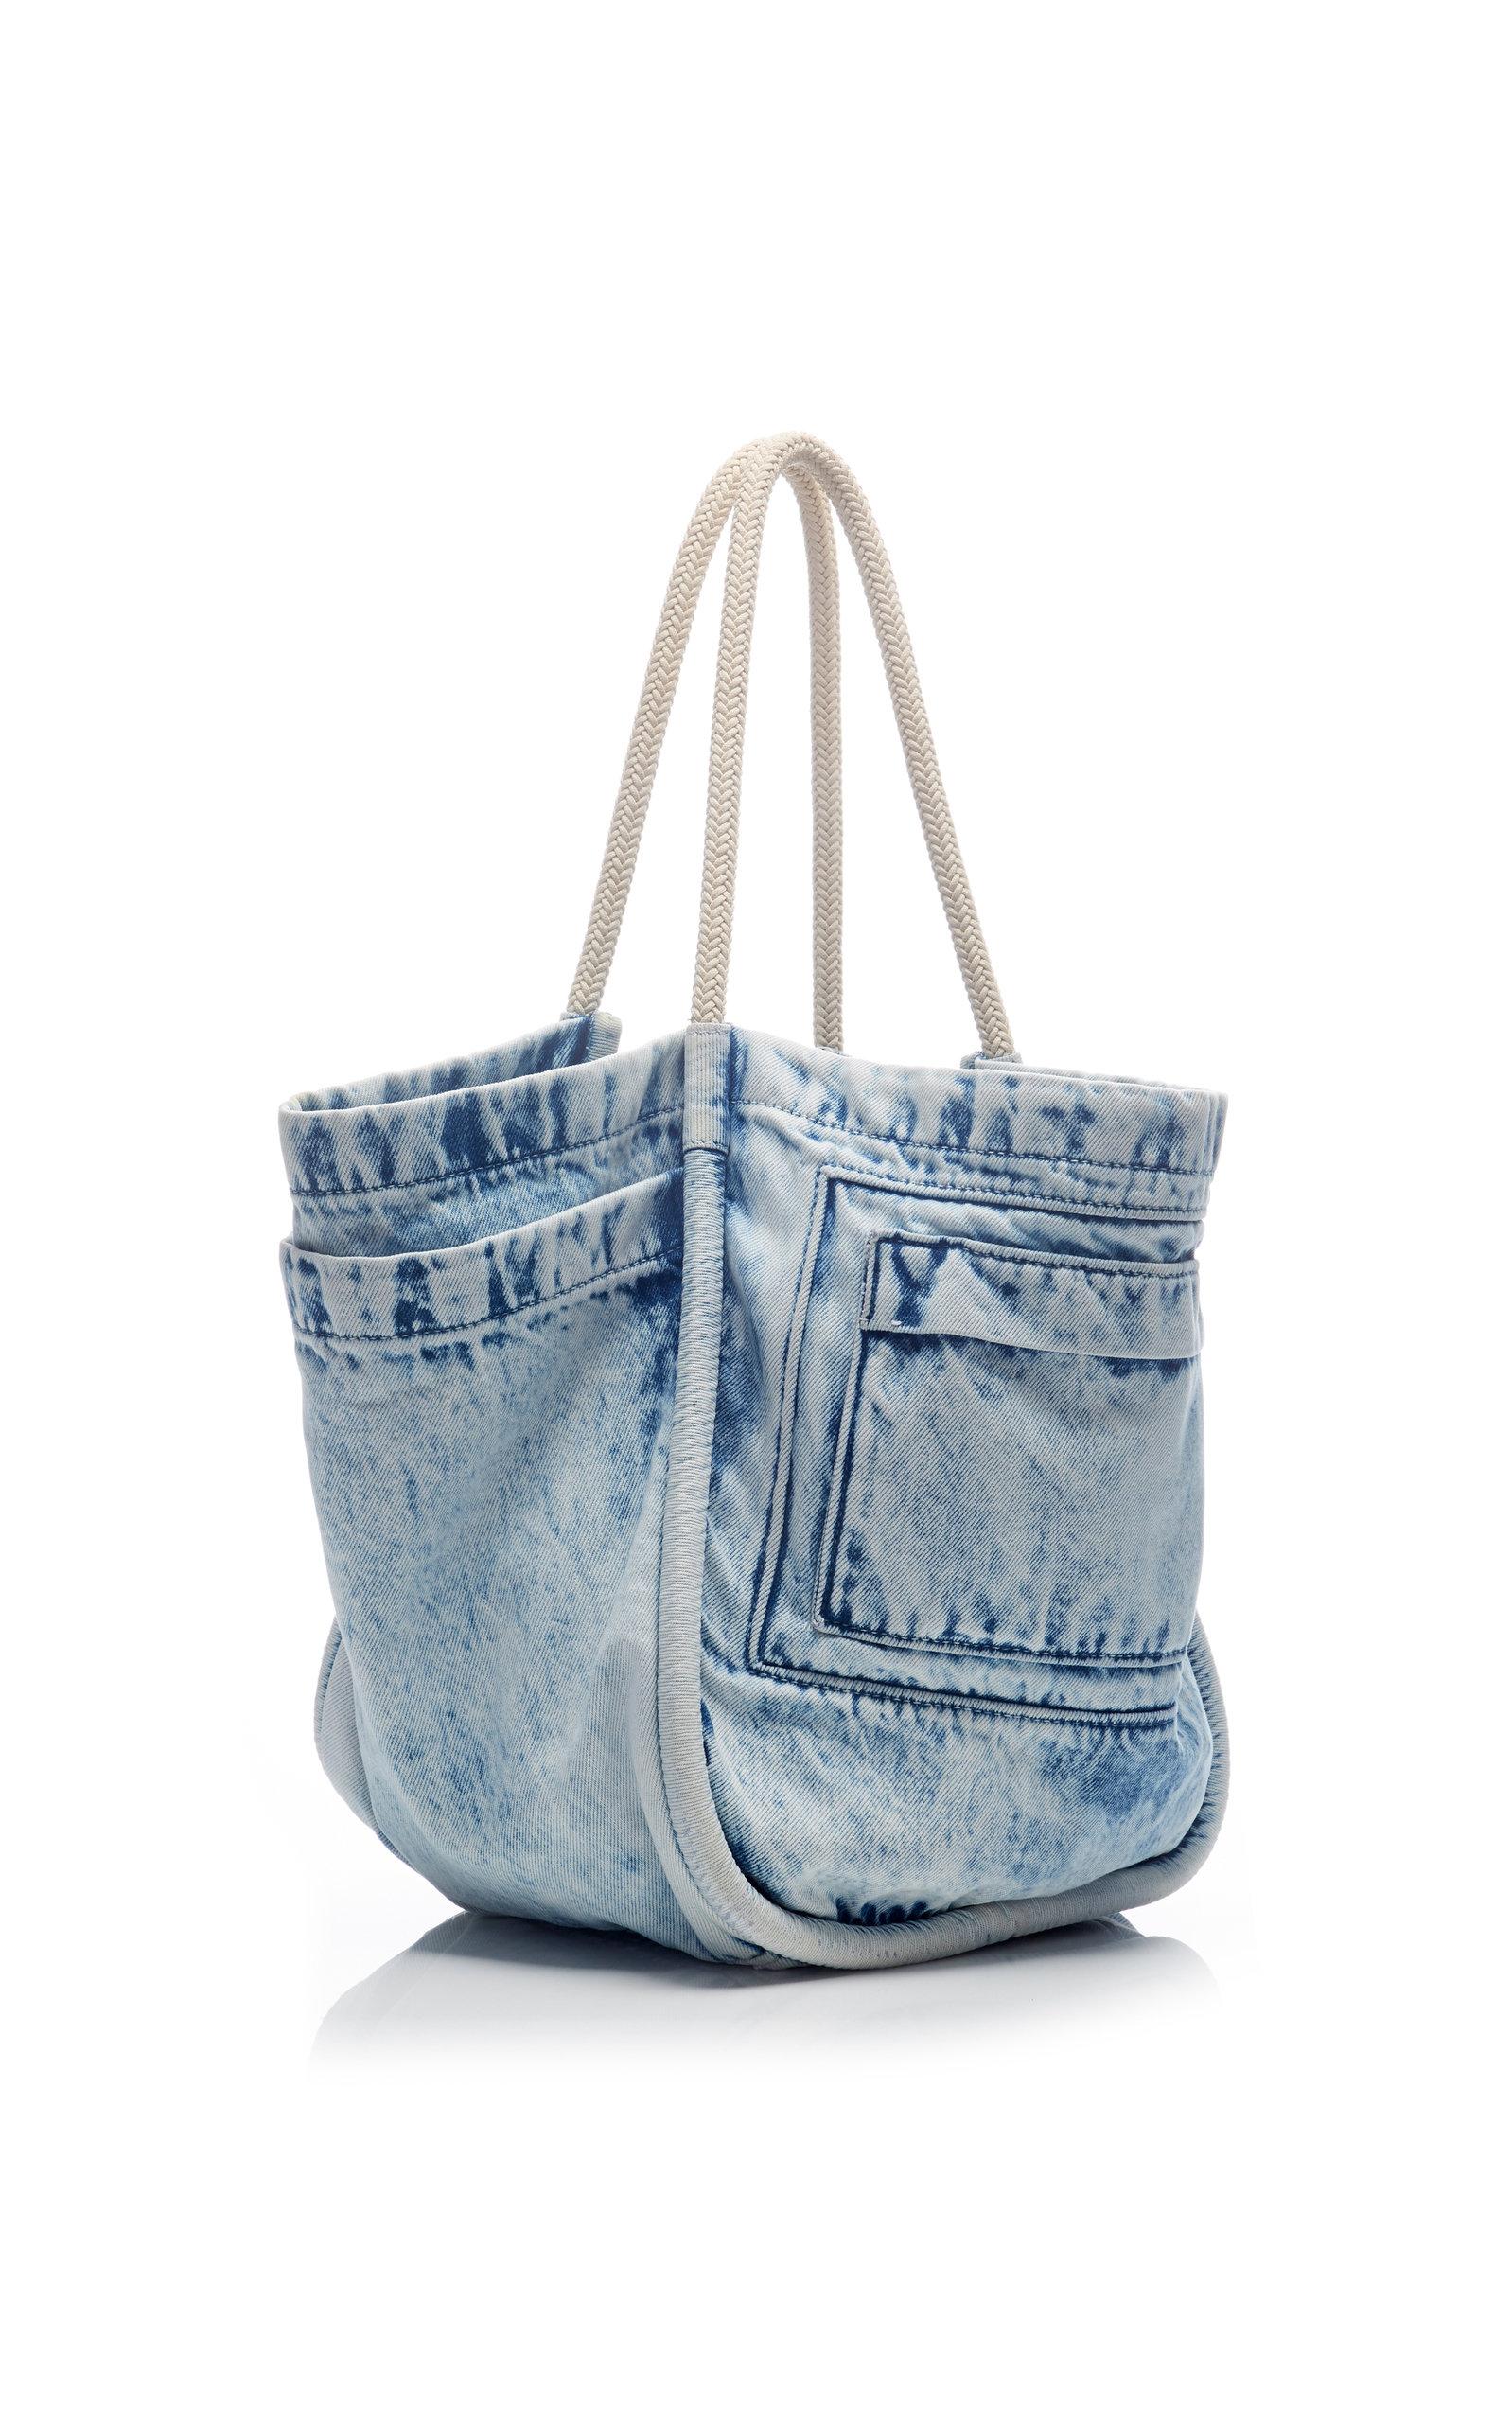 Proenza Schouler Large Denim Tote Bag in Blue Pattern (Blue) - Lyst